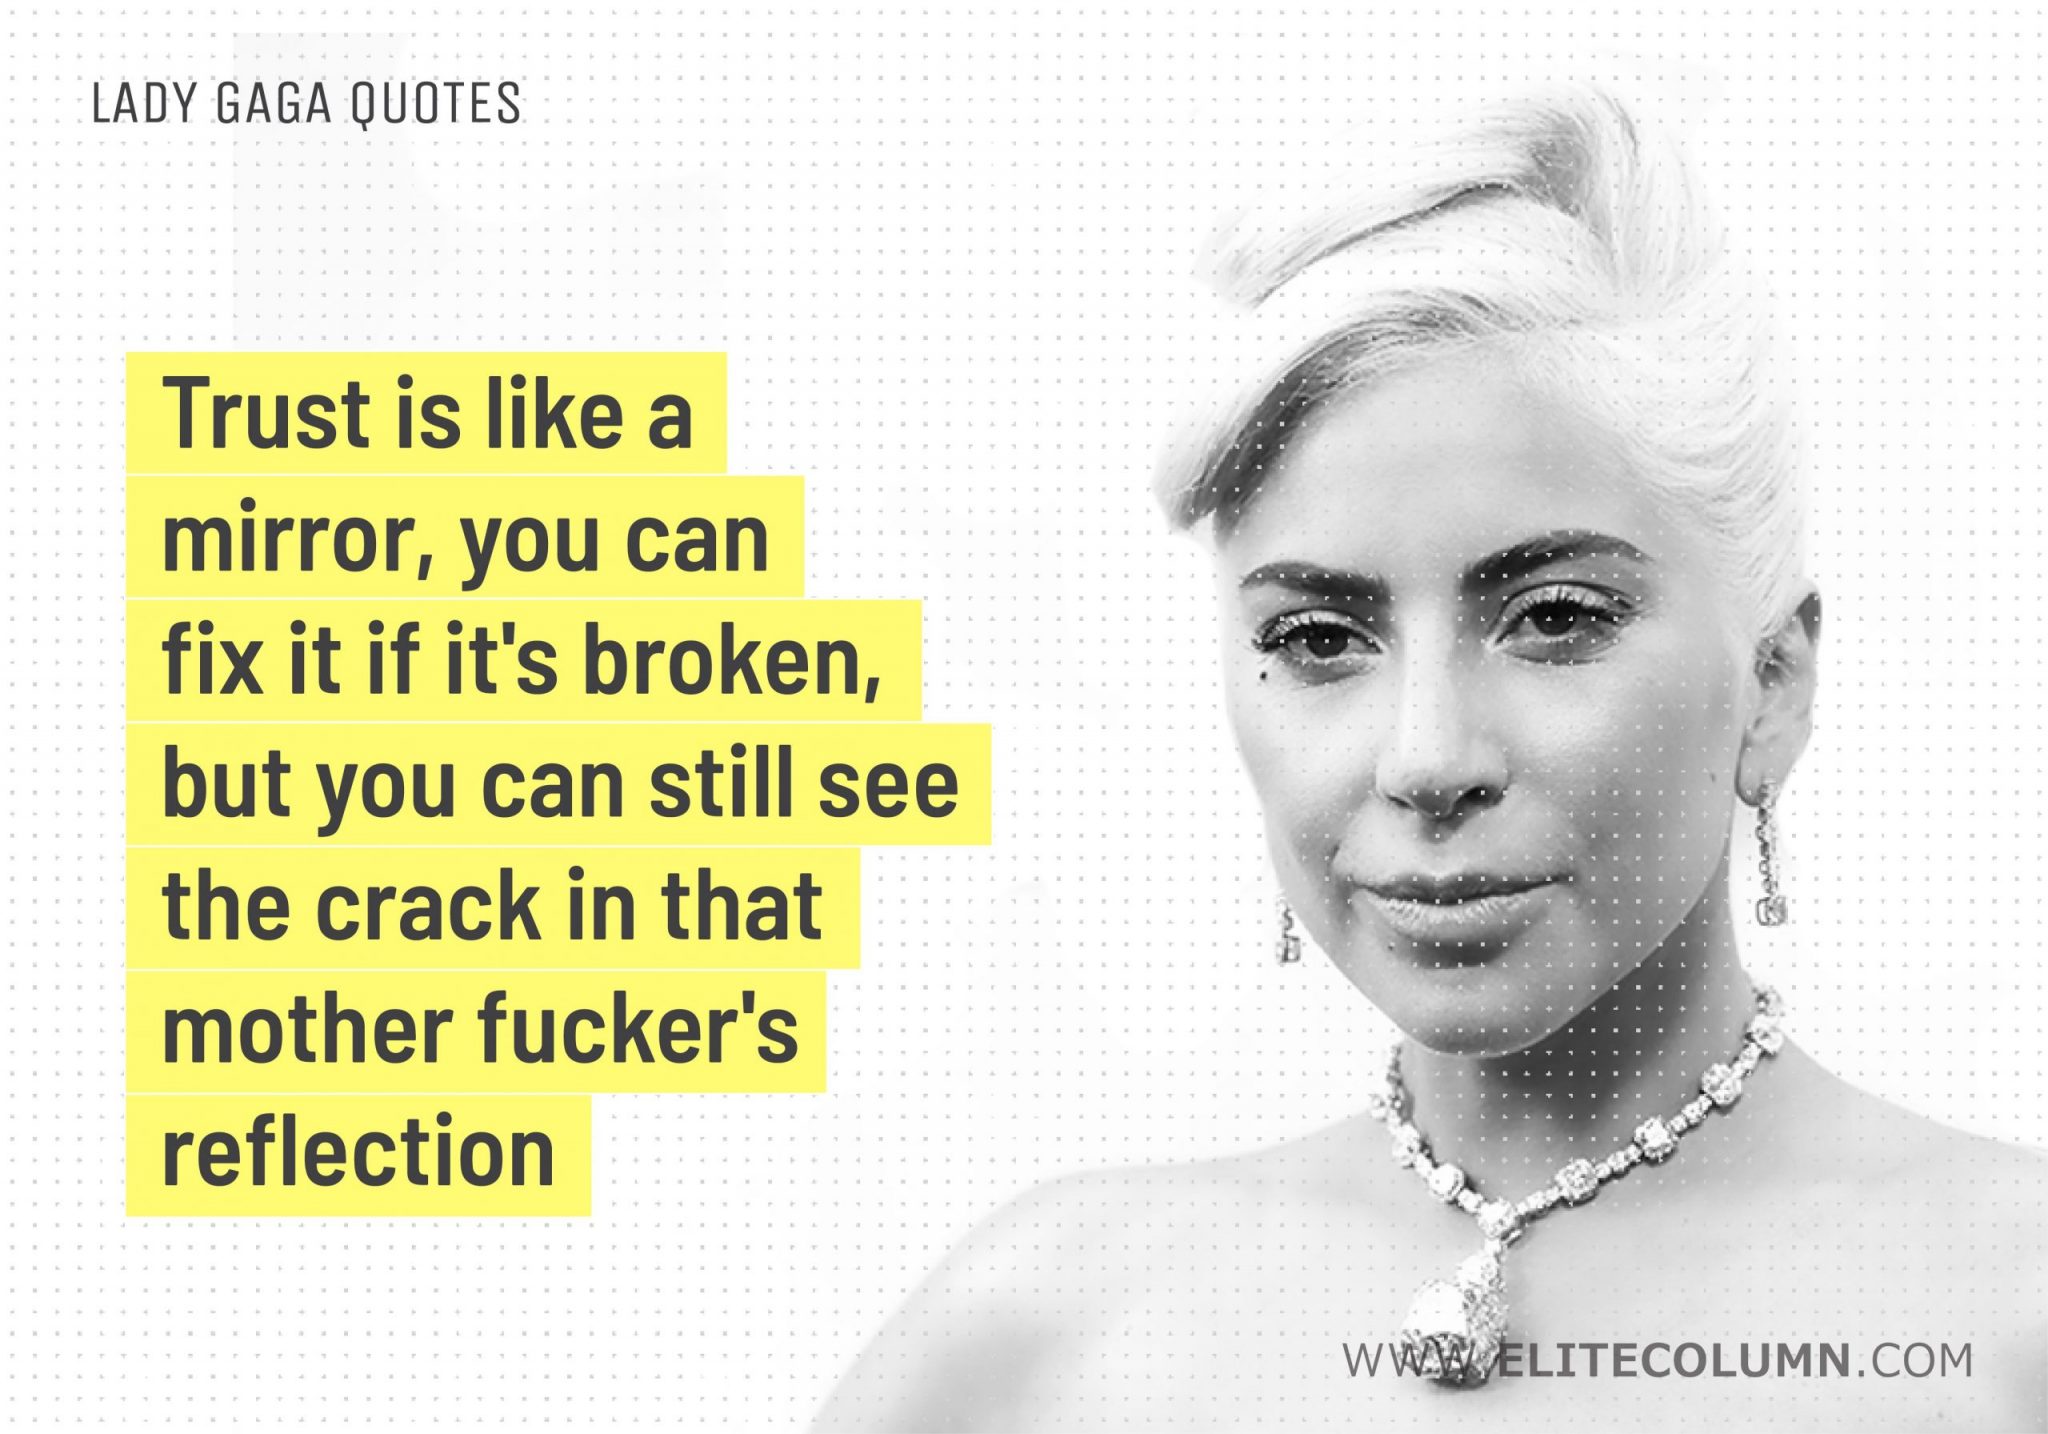 Lady Gaga Quotes (2)